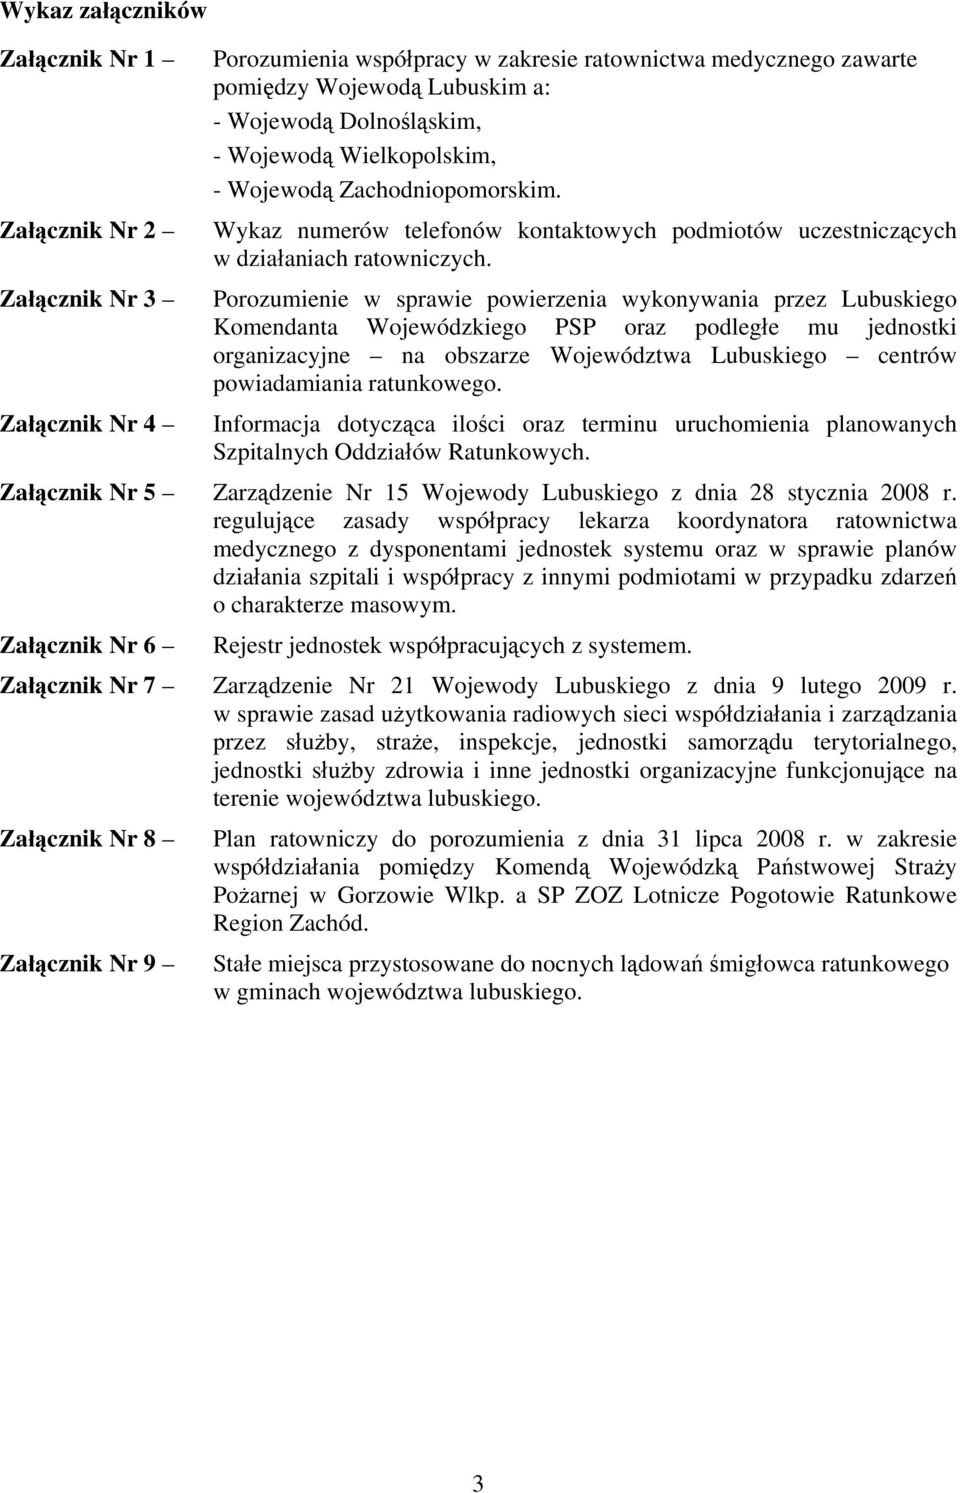 Porozumienie w sprawie powierzenia wykonywania przez Lubuskiego Komendanta Wojewódzkiego PSP oraz podległe mu jednostki organizacyjne na obszarze Województwa Lubuskiego centrów powiadamiania